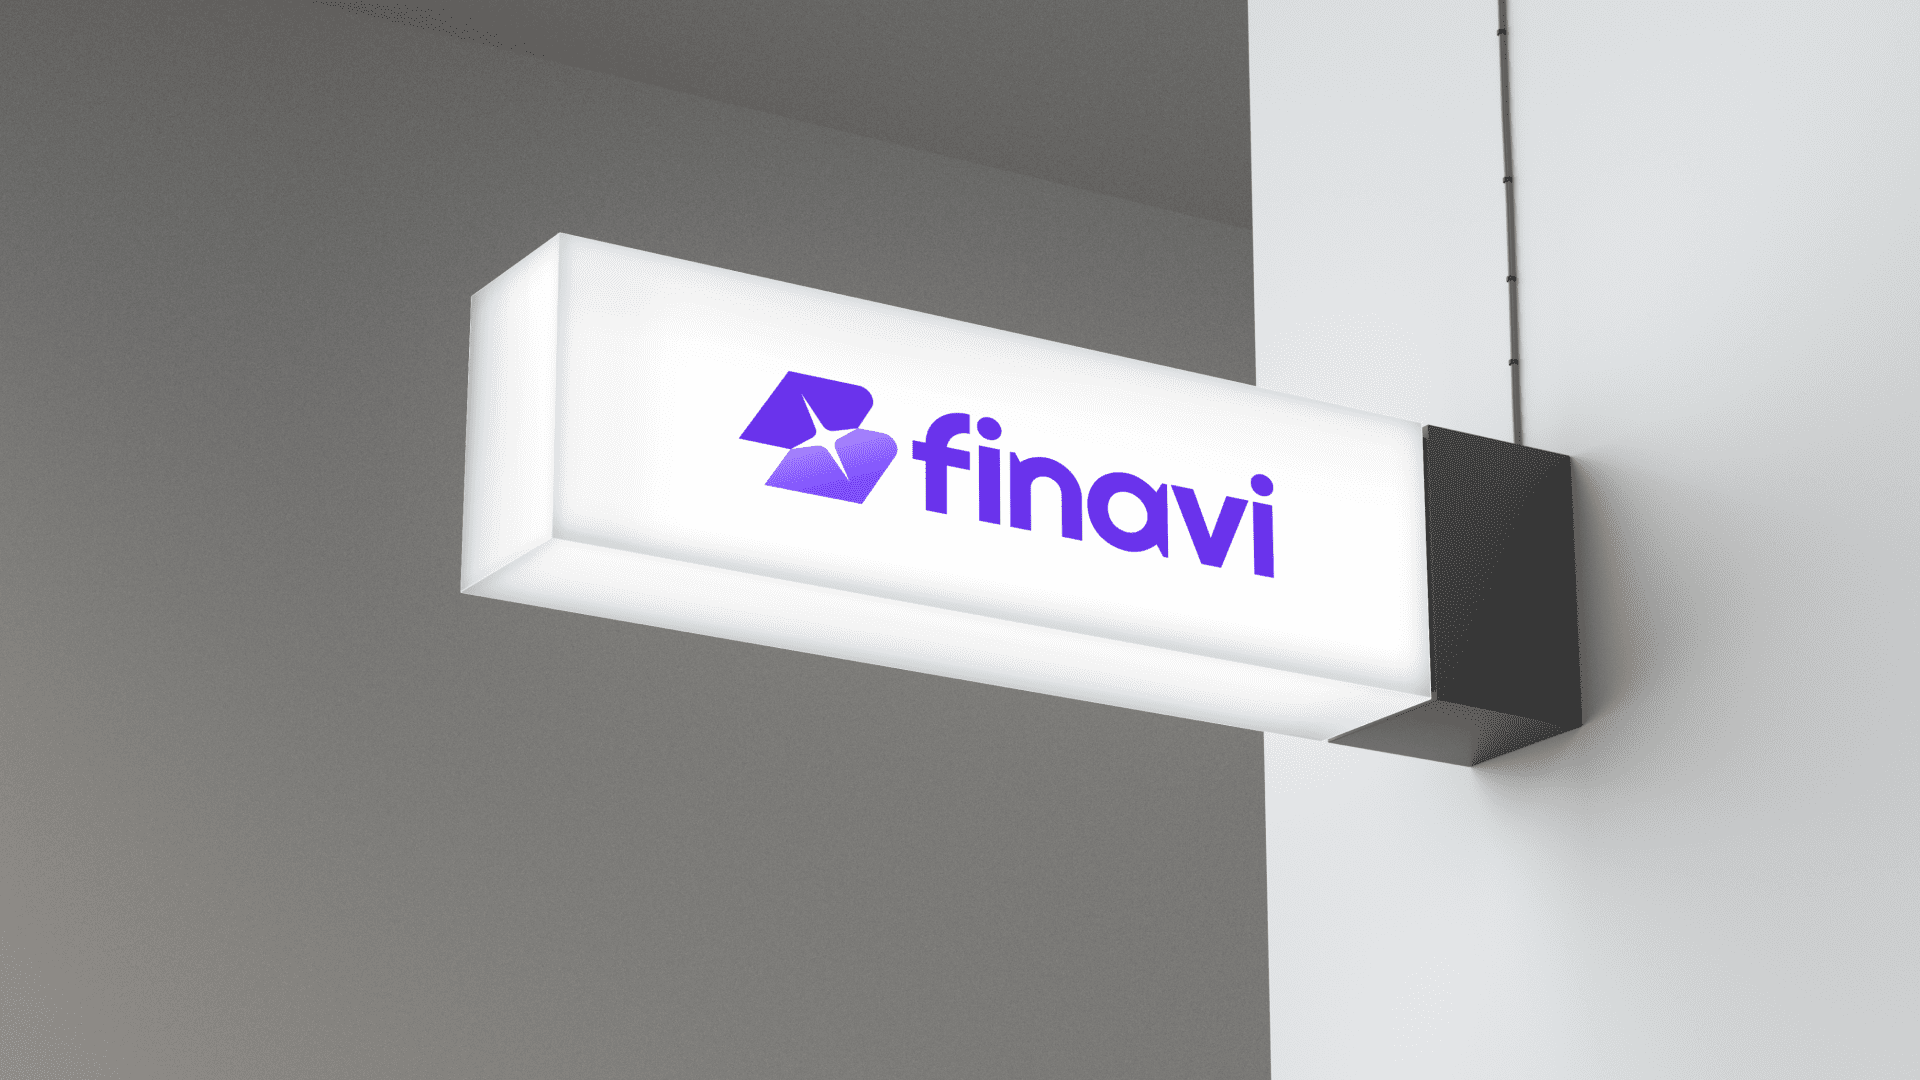 Finavi: Đặt tên và thiết kế bộ nhận diện thương hiệu